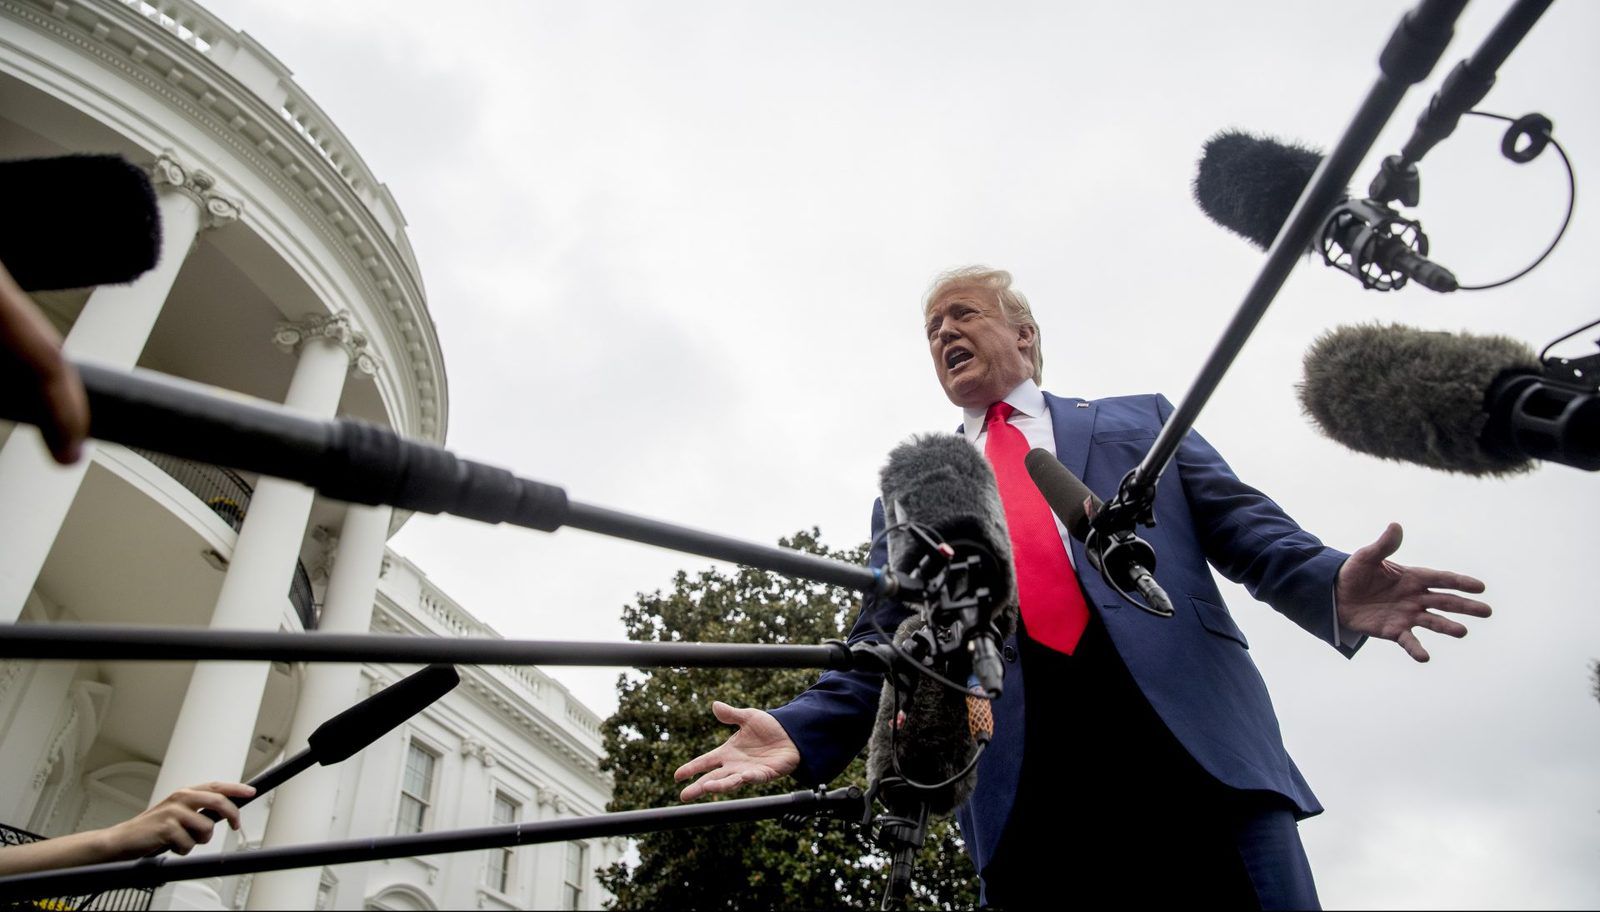 Illustration : Le président Donald Trump s'adresse aux médias sur la pelouse sud de la Maison Blanche à Washington, le jeudi 3 octobre 2019 - Andrew Harnik / AP Photo